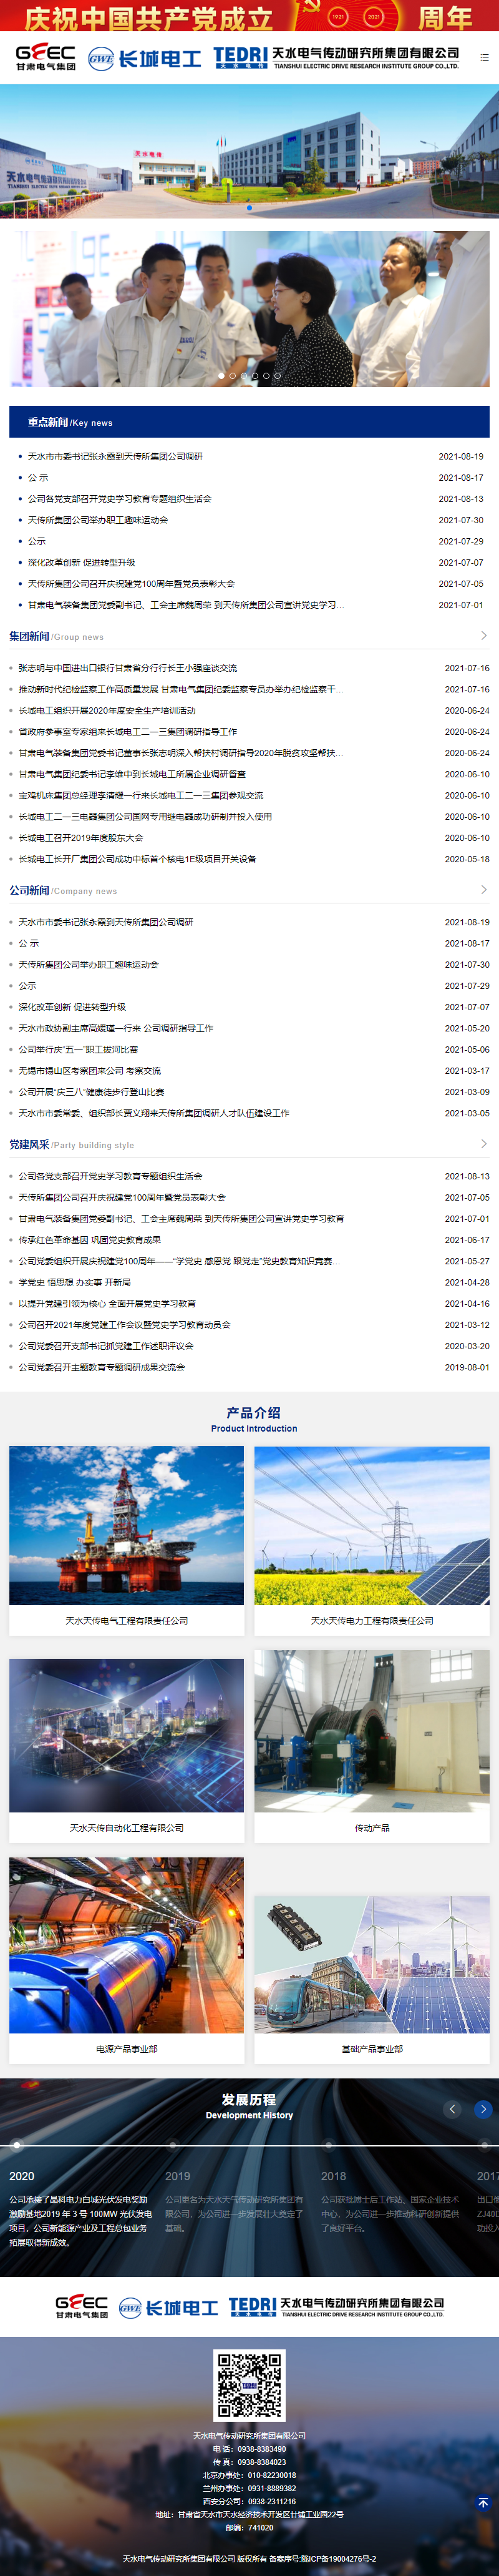 天水电气传动研究所集团有限公司网站案例